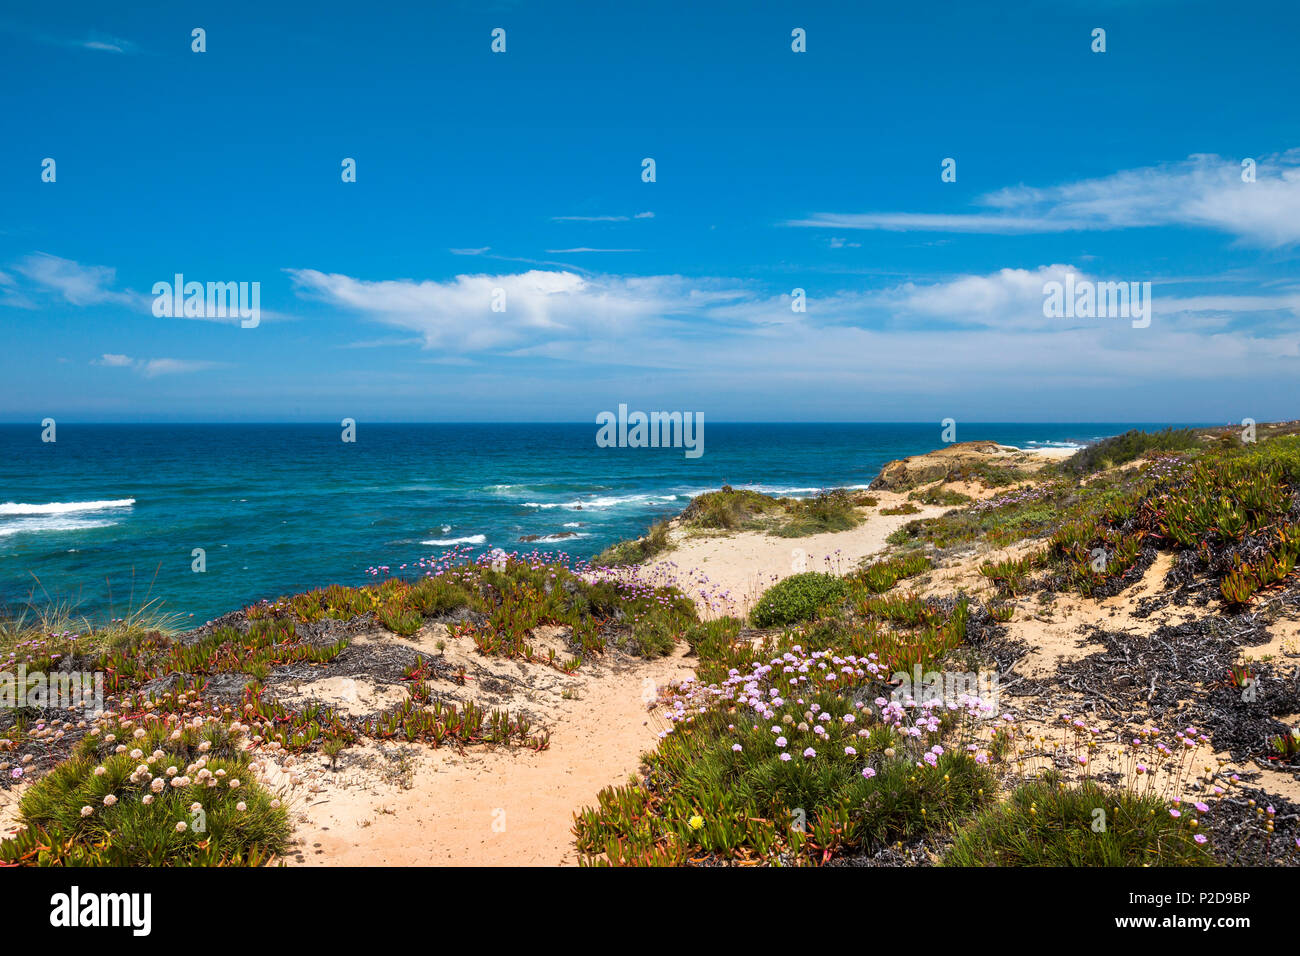 Coastline, Almograve, Costa Vicentina, Alentejo, Portugal Stock Photo